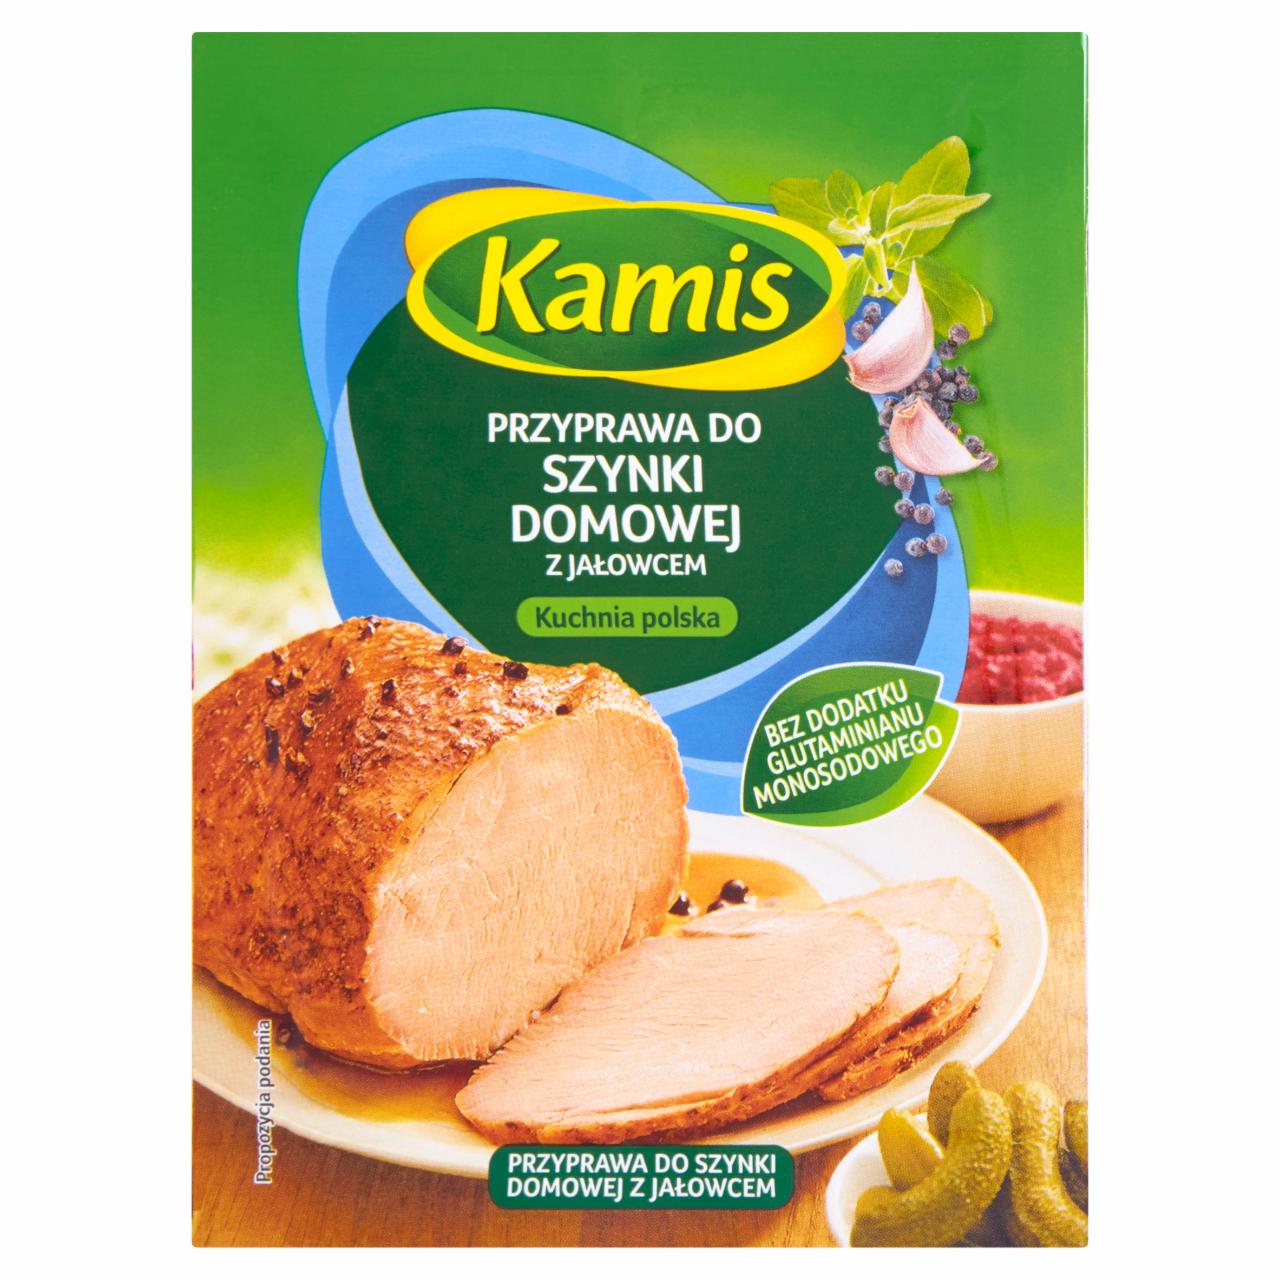 Zdjęcia - Kamis Kuchnia polska Przyprawa do szynki domowej z jałowcem Mieszanka przyprawowa 22 g